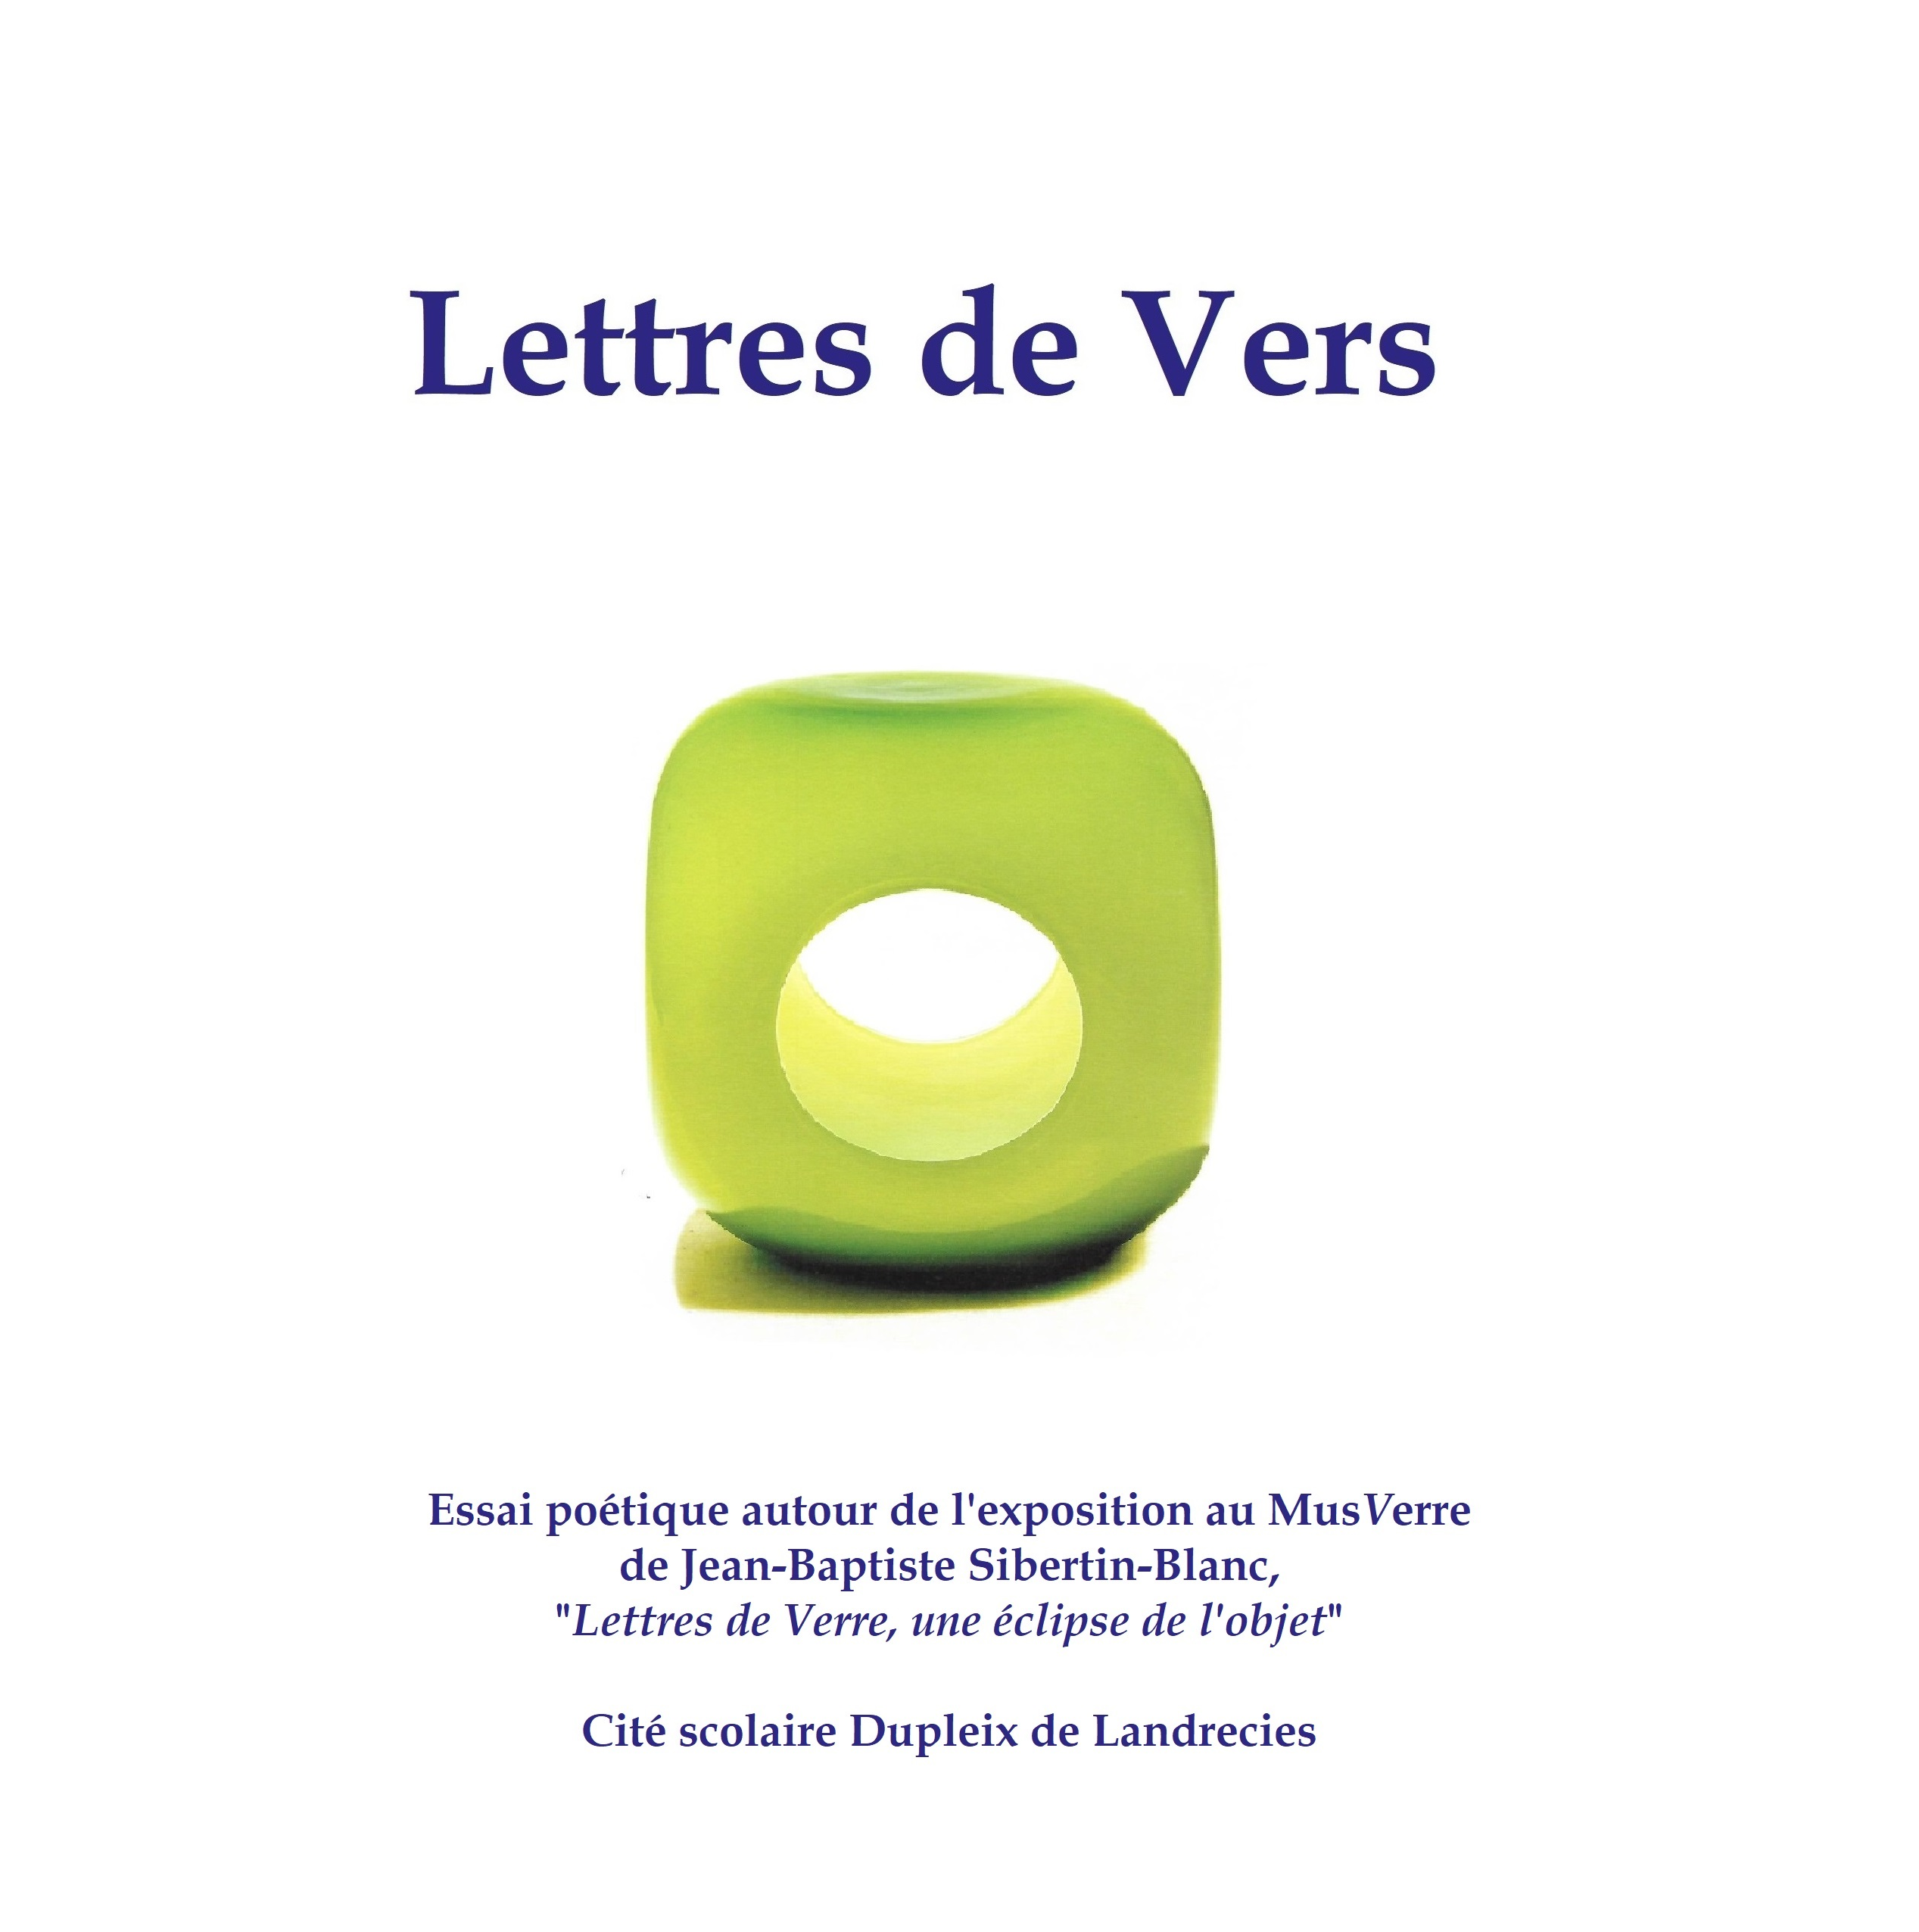 Lettres de Vers